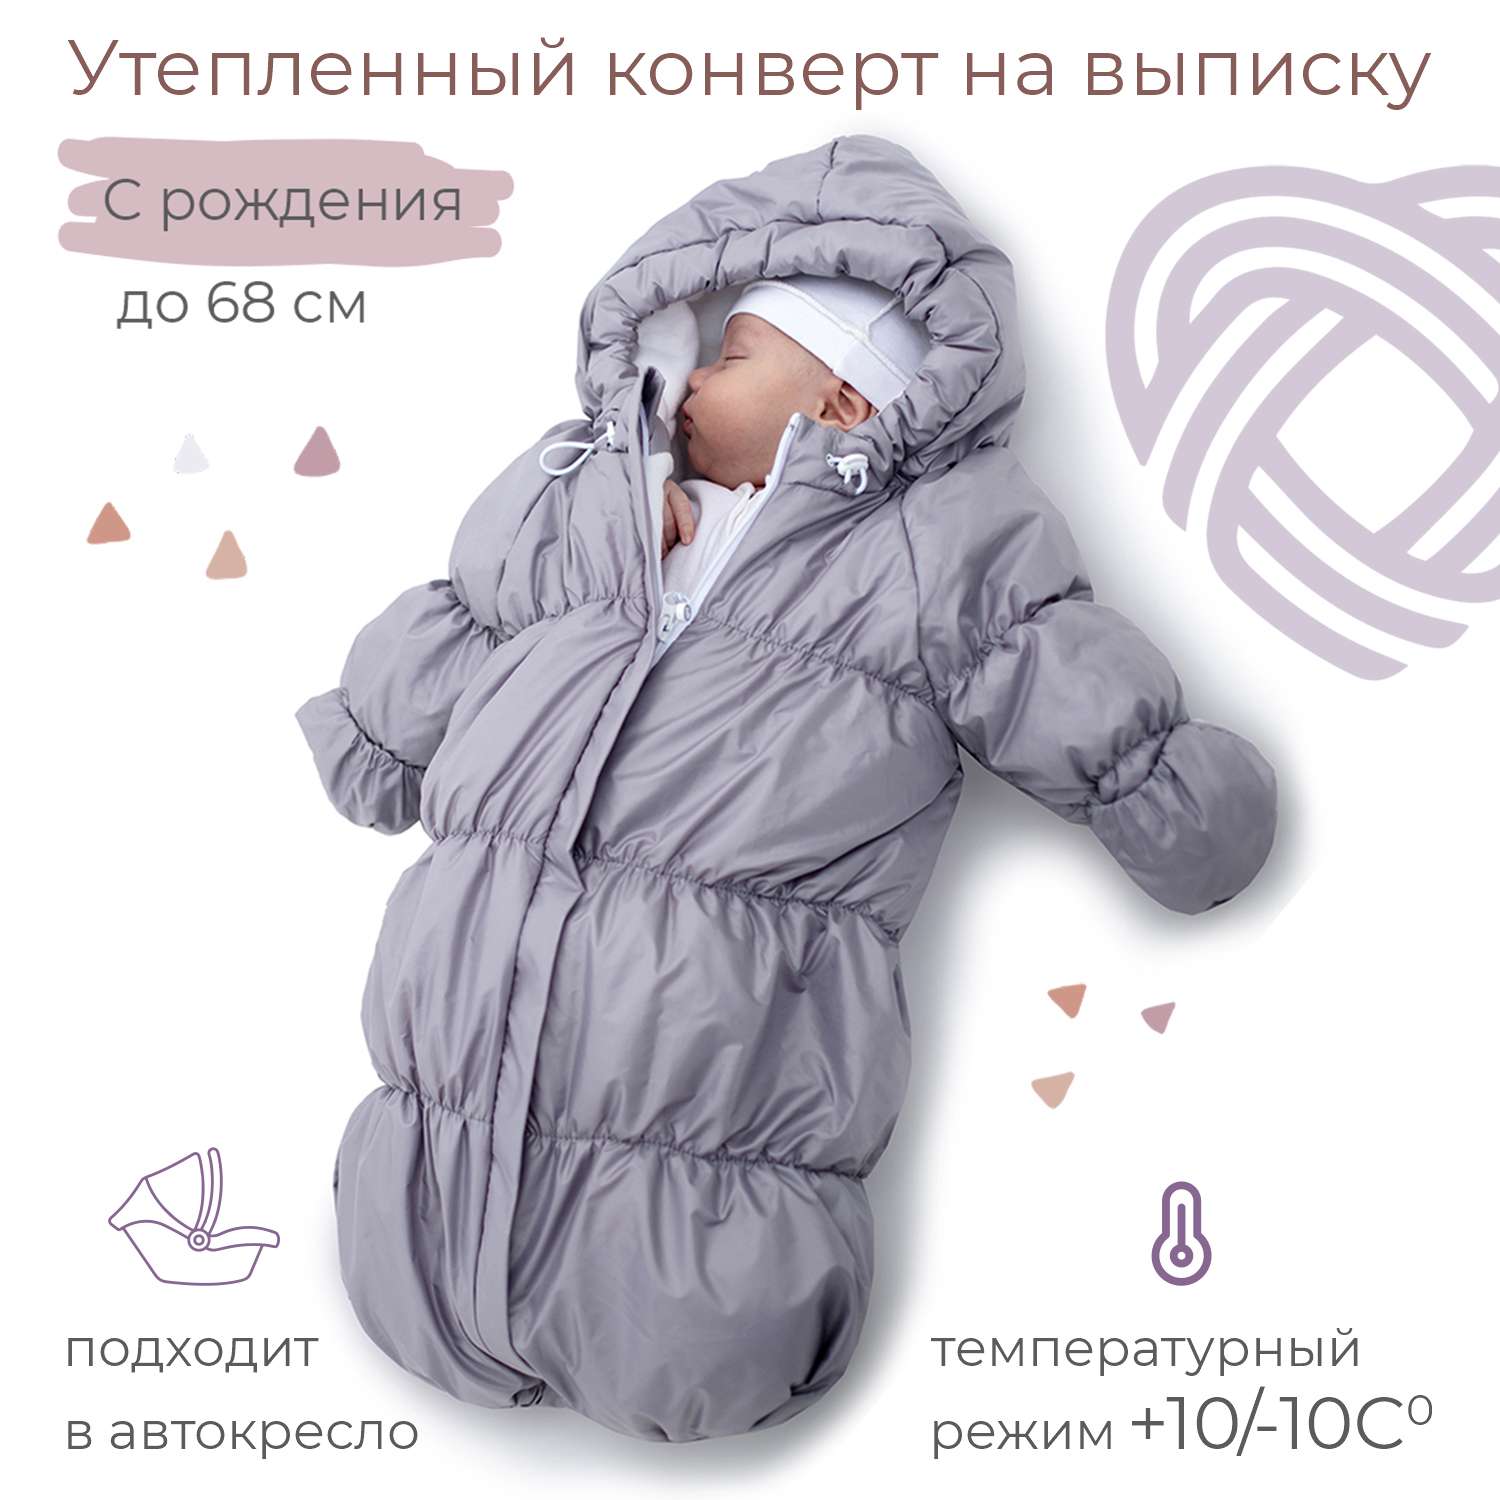 Конверт для новорожденного inlovery на выписку/в коляску «Маршмеллоу» серебряный - фото 1